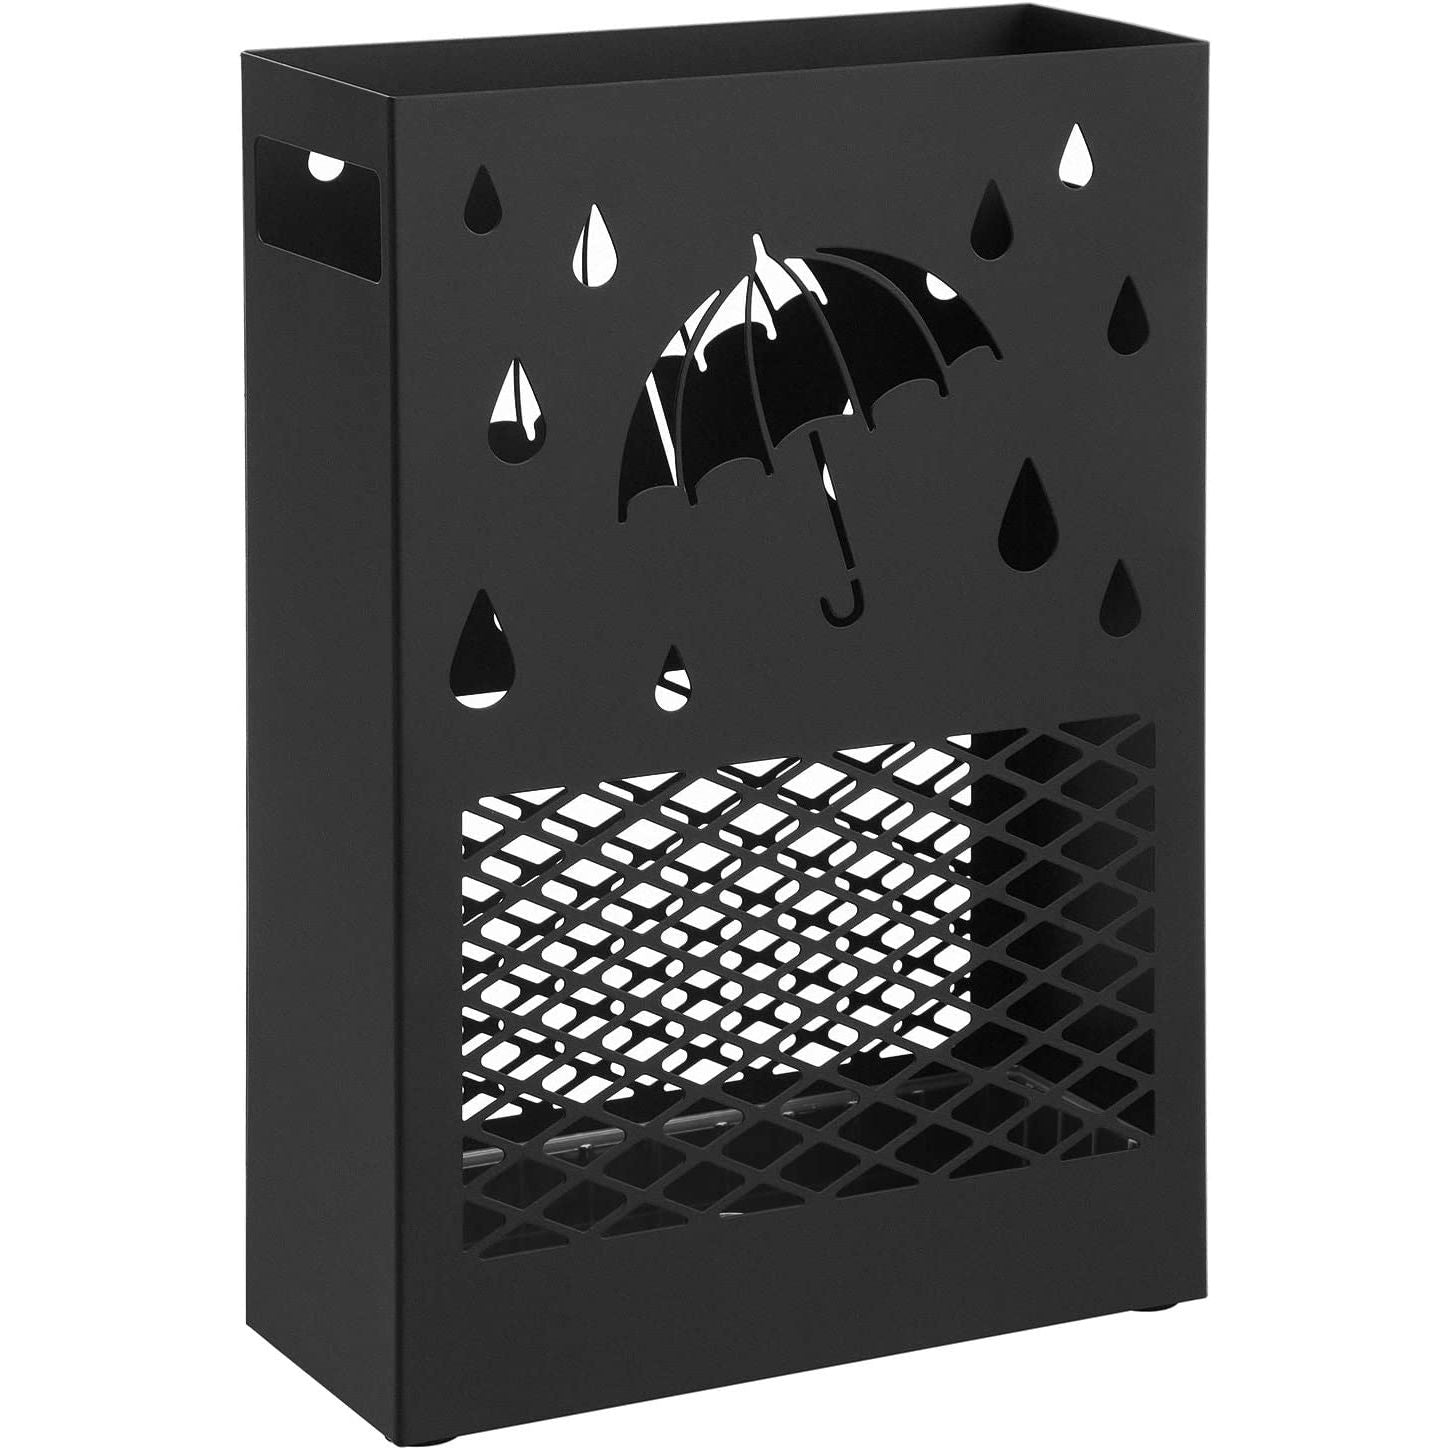 #2 - Rektangulært paraplystativ i metal med aftagelig vanddrypbakke, 4 kroge